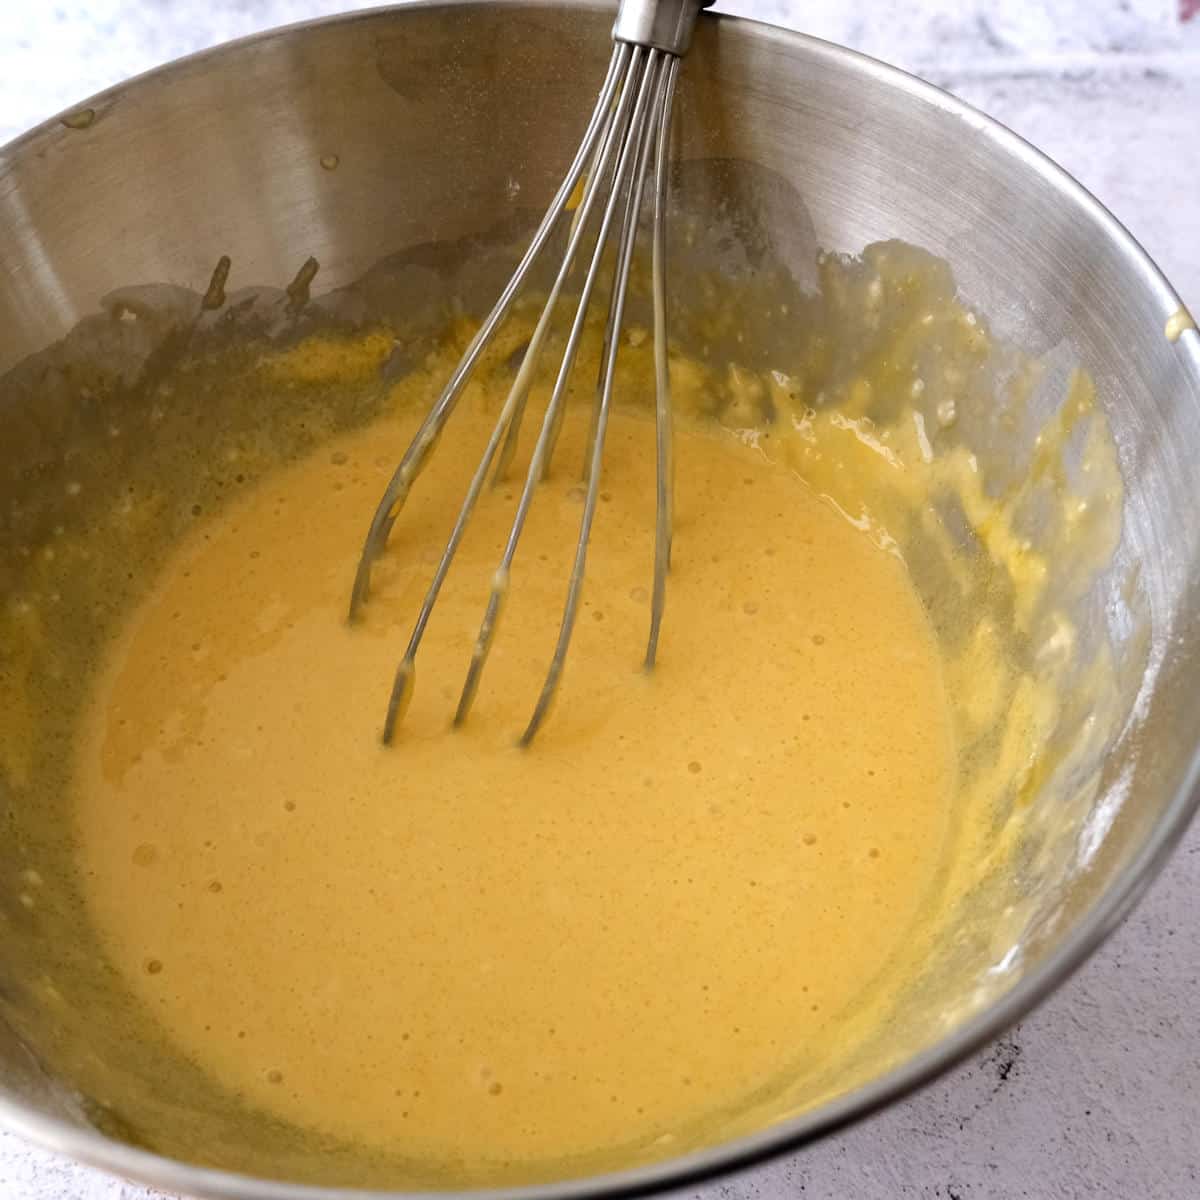 making the pancake batter